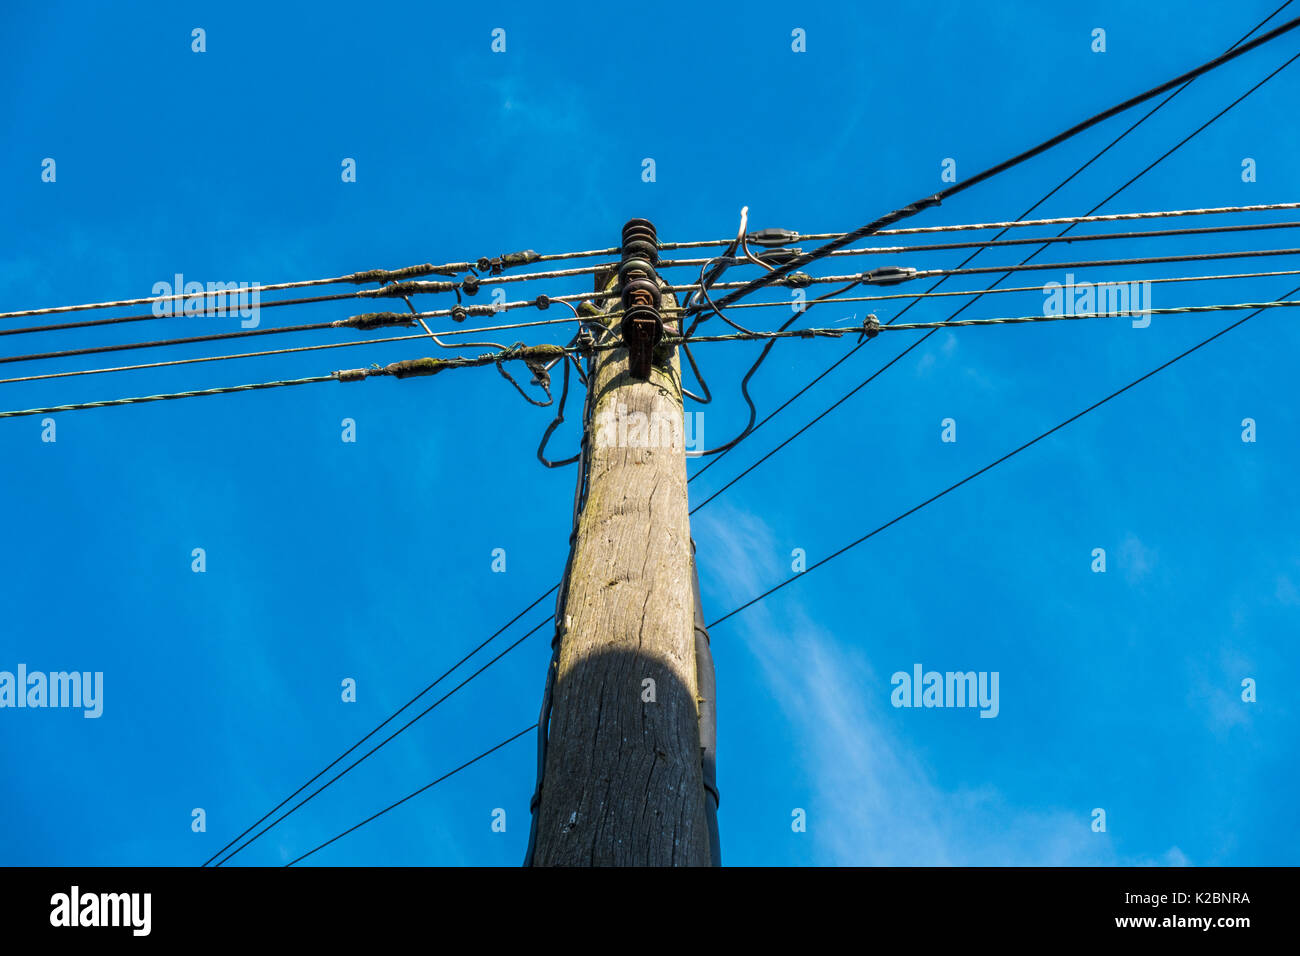 Eine Vertraute, Traditionelle, sonnendurchfluteten Telegraphenmast und Telefon Kabel, gesehen von unten, gegen ein strahlend blauer Himmel. Langtoft, Lincolnshire, England, UK. Stockfoto